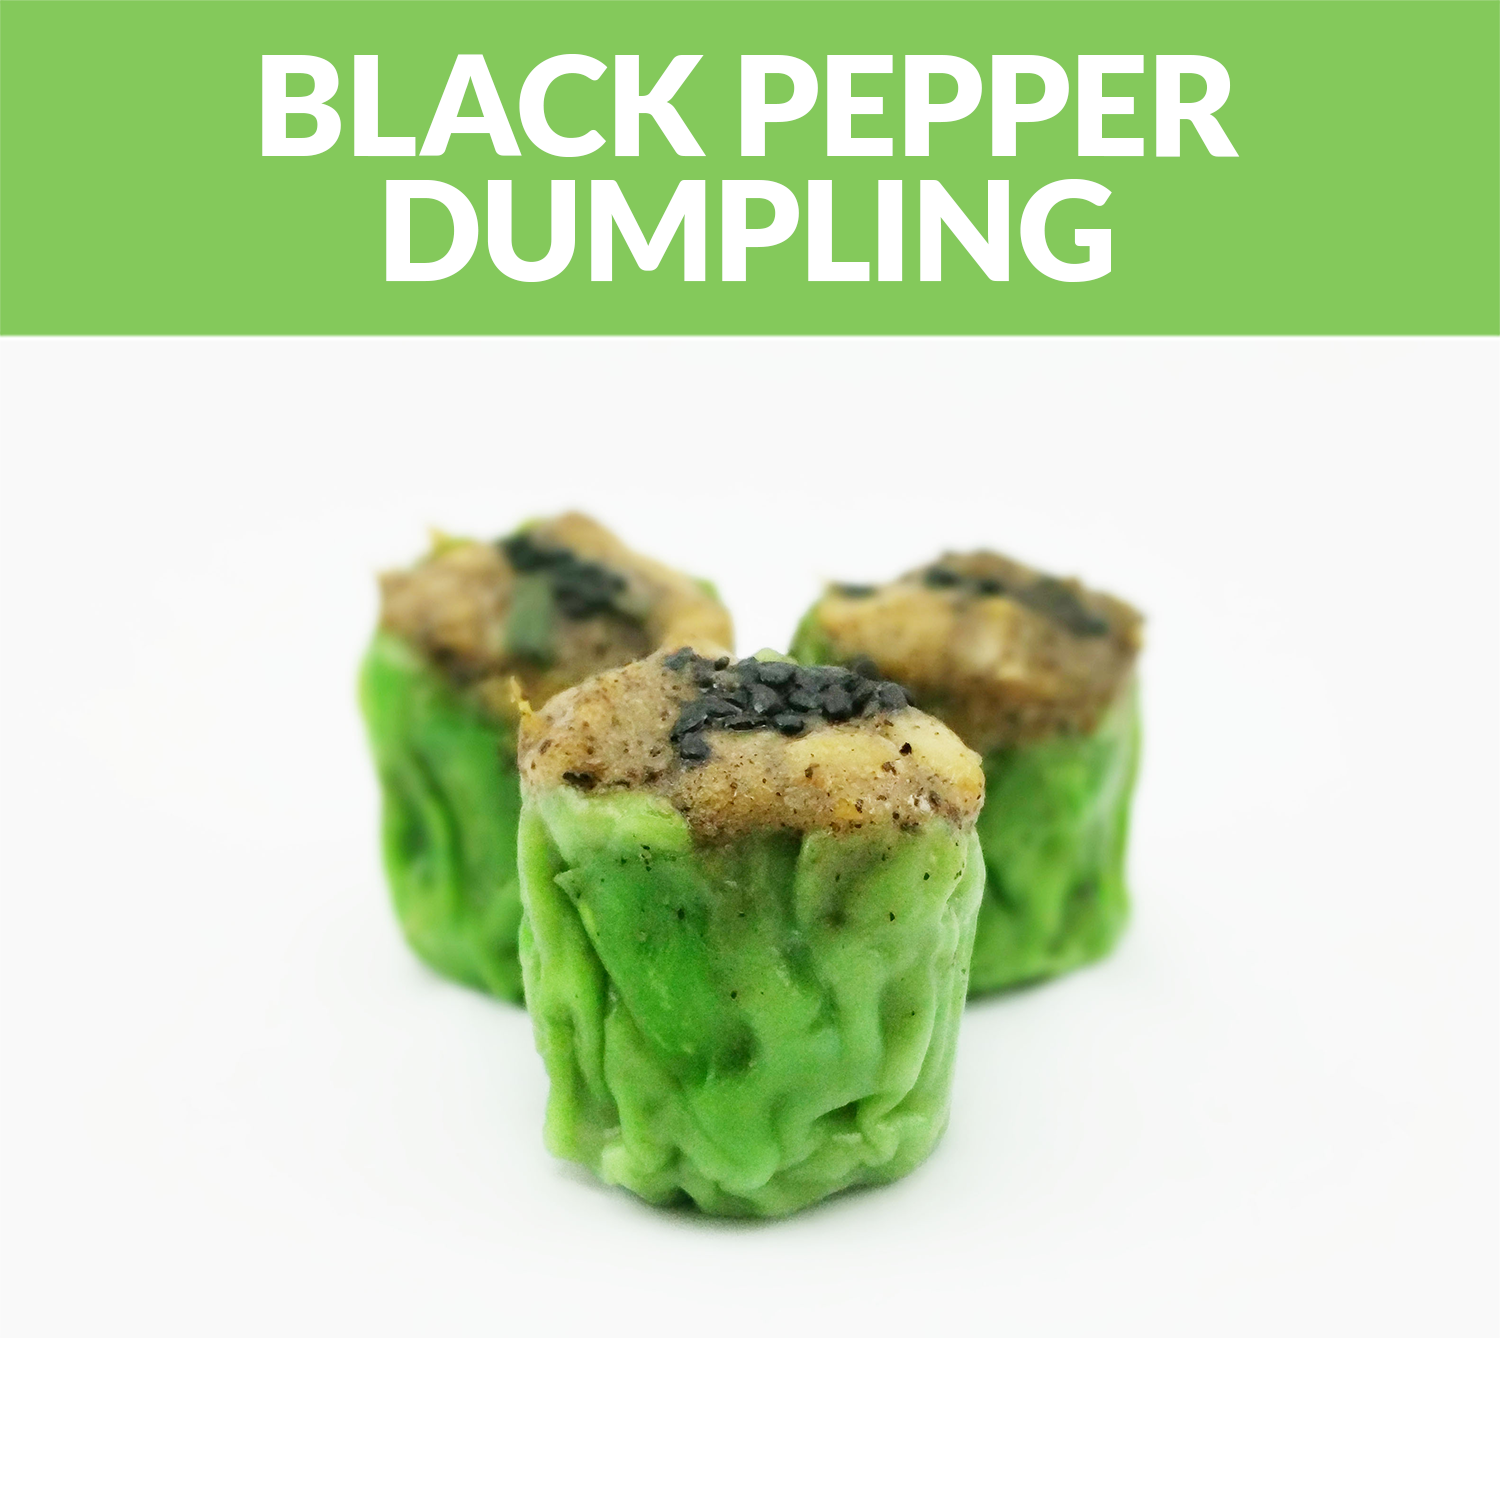 Products-Dumpling-Black-Pepper-Dumpling.png